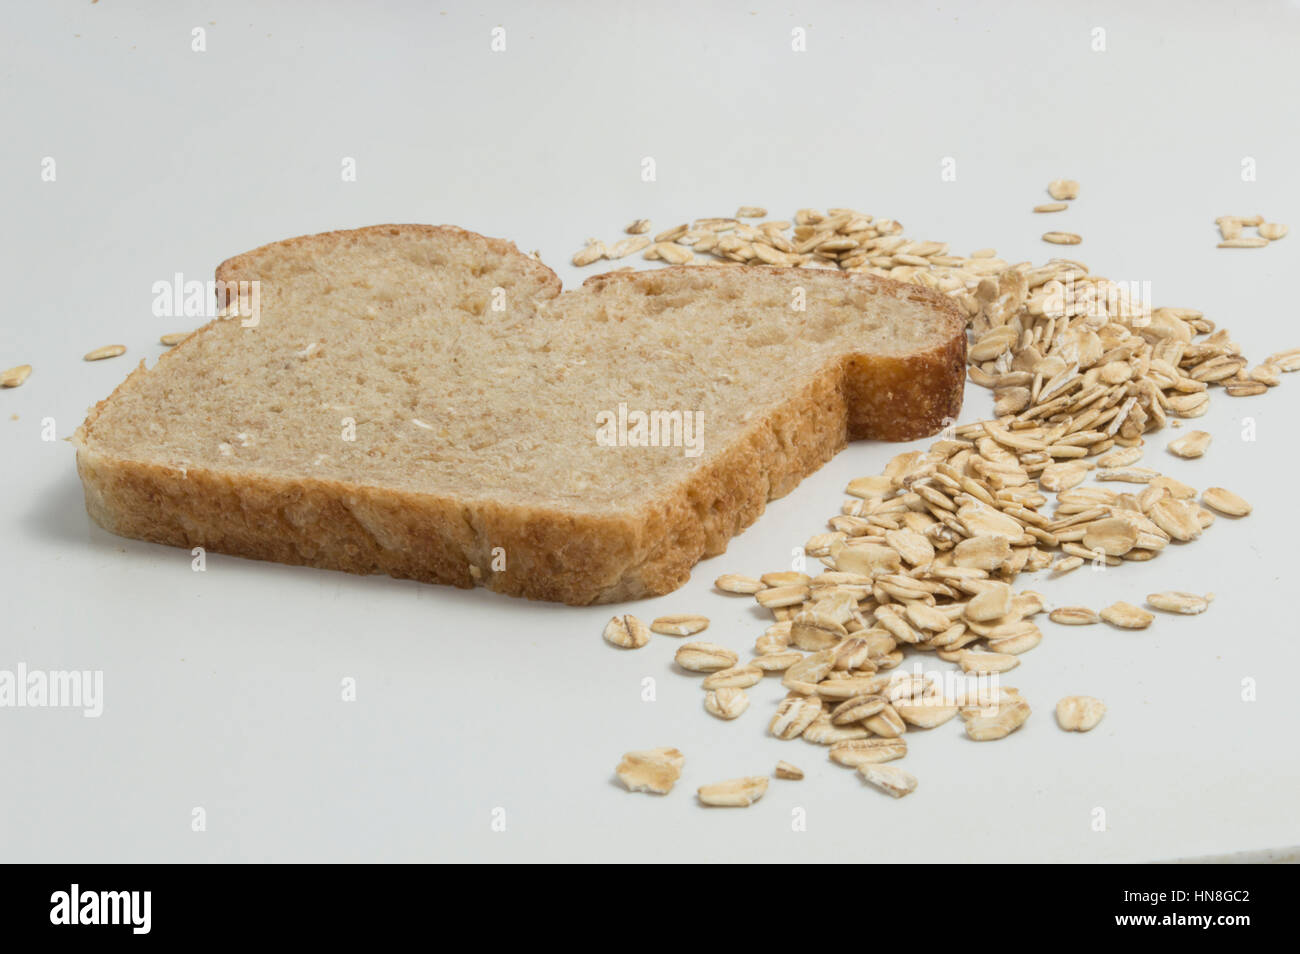 Tranche de pain de blé entier avec de l'avoine sur fond blanc Banque D'Images